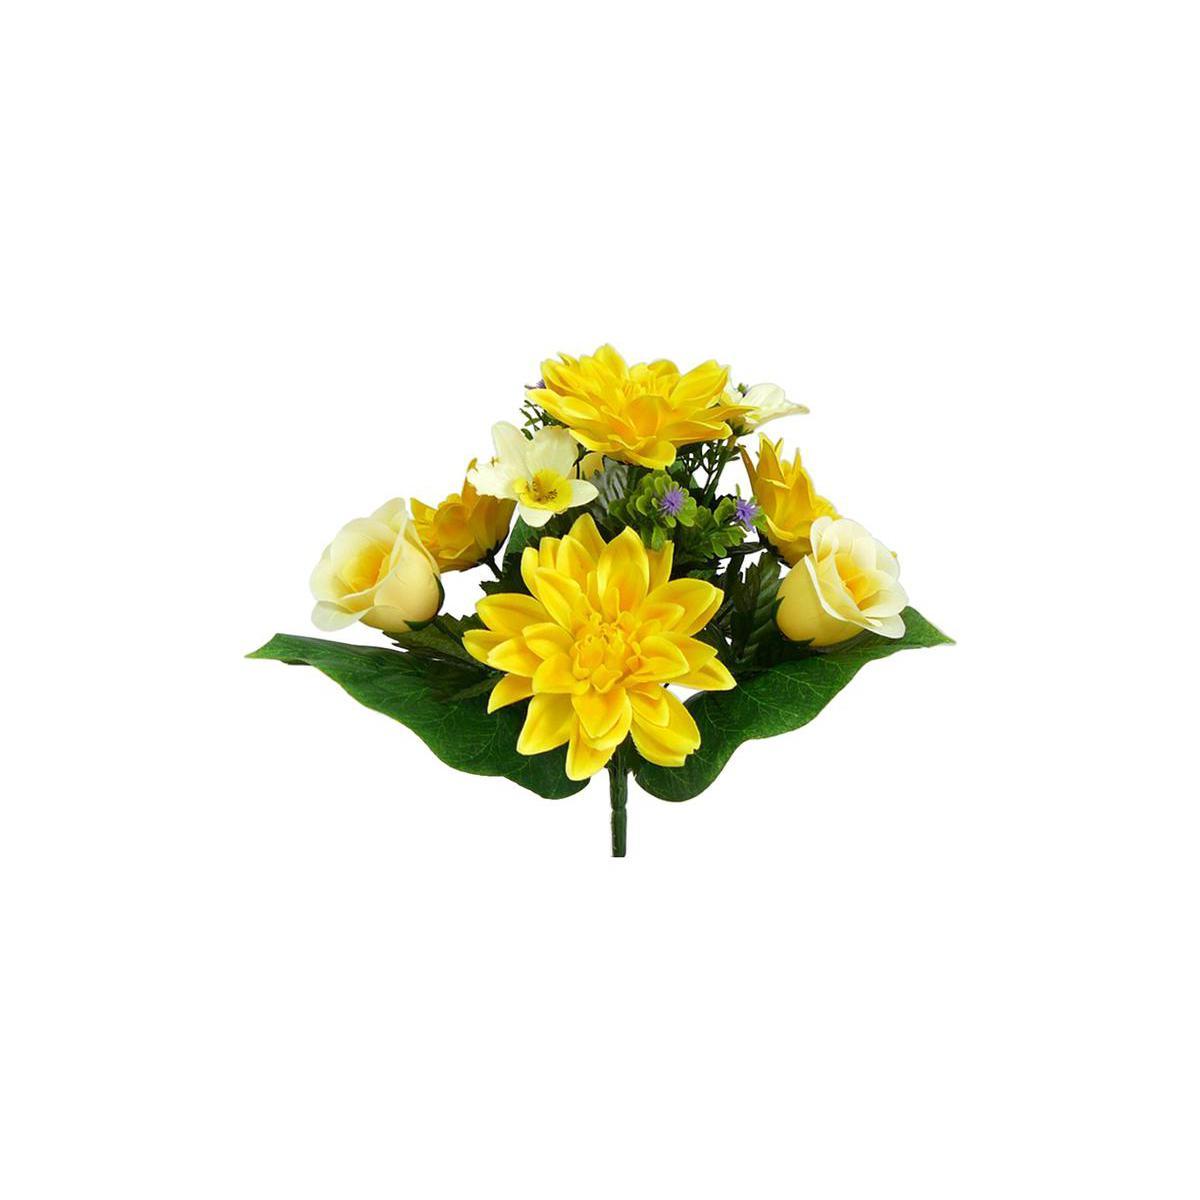 Piquet de dahlias, roses, orchidées - Polyester - H 35 cm - Différents coloris